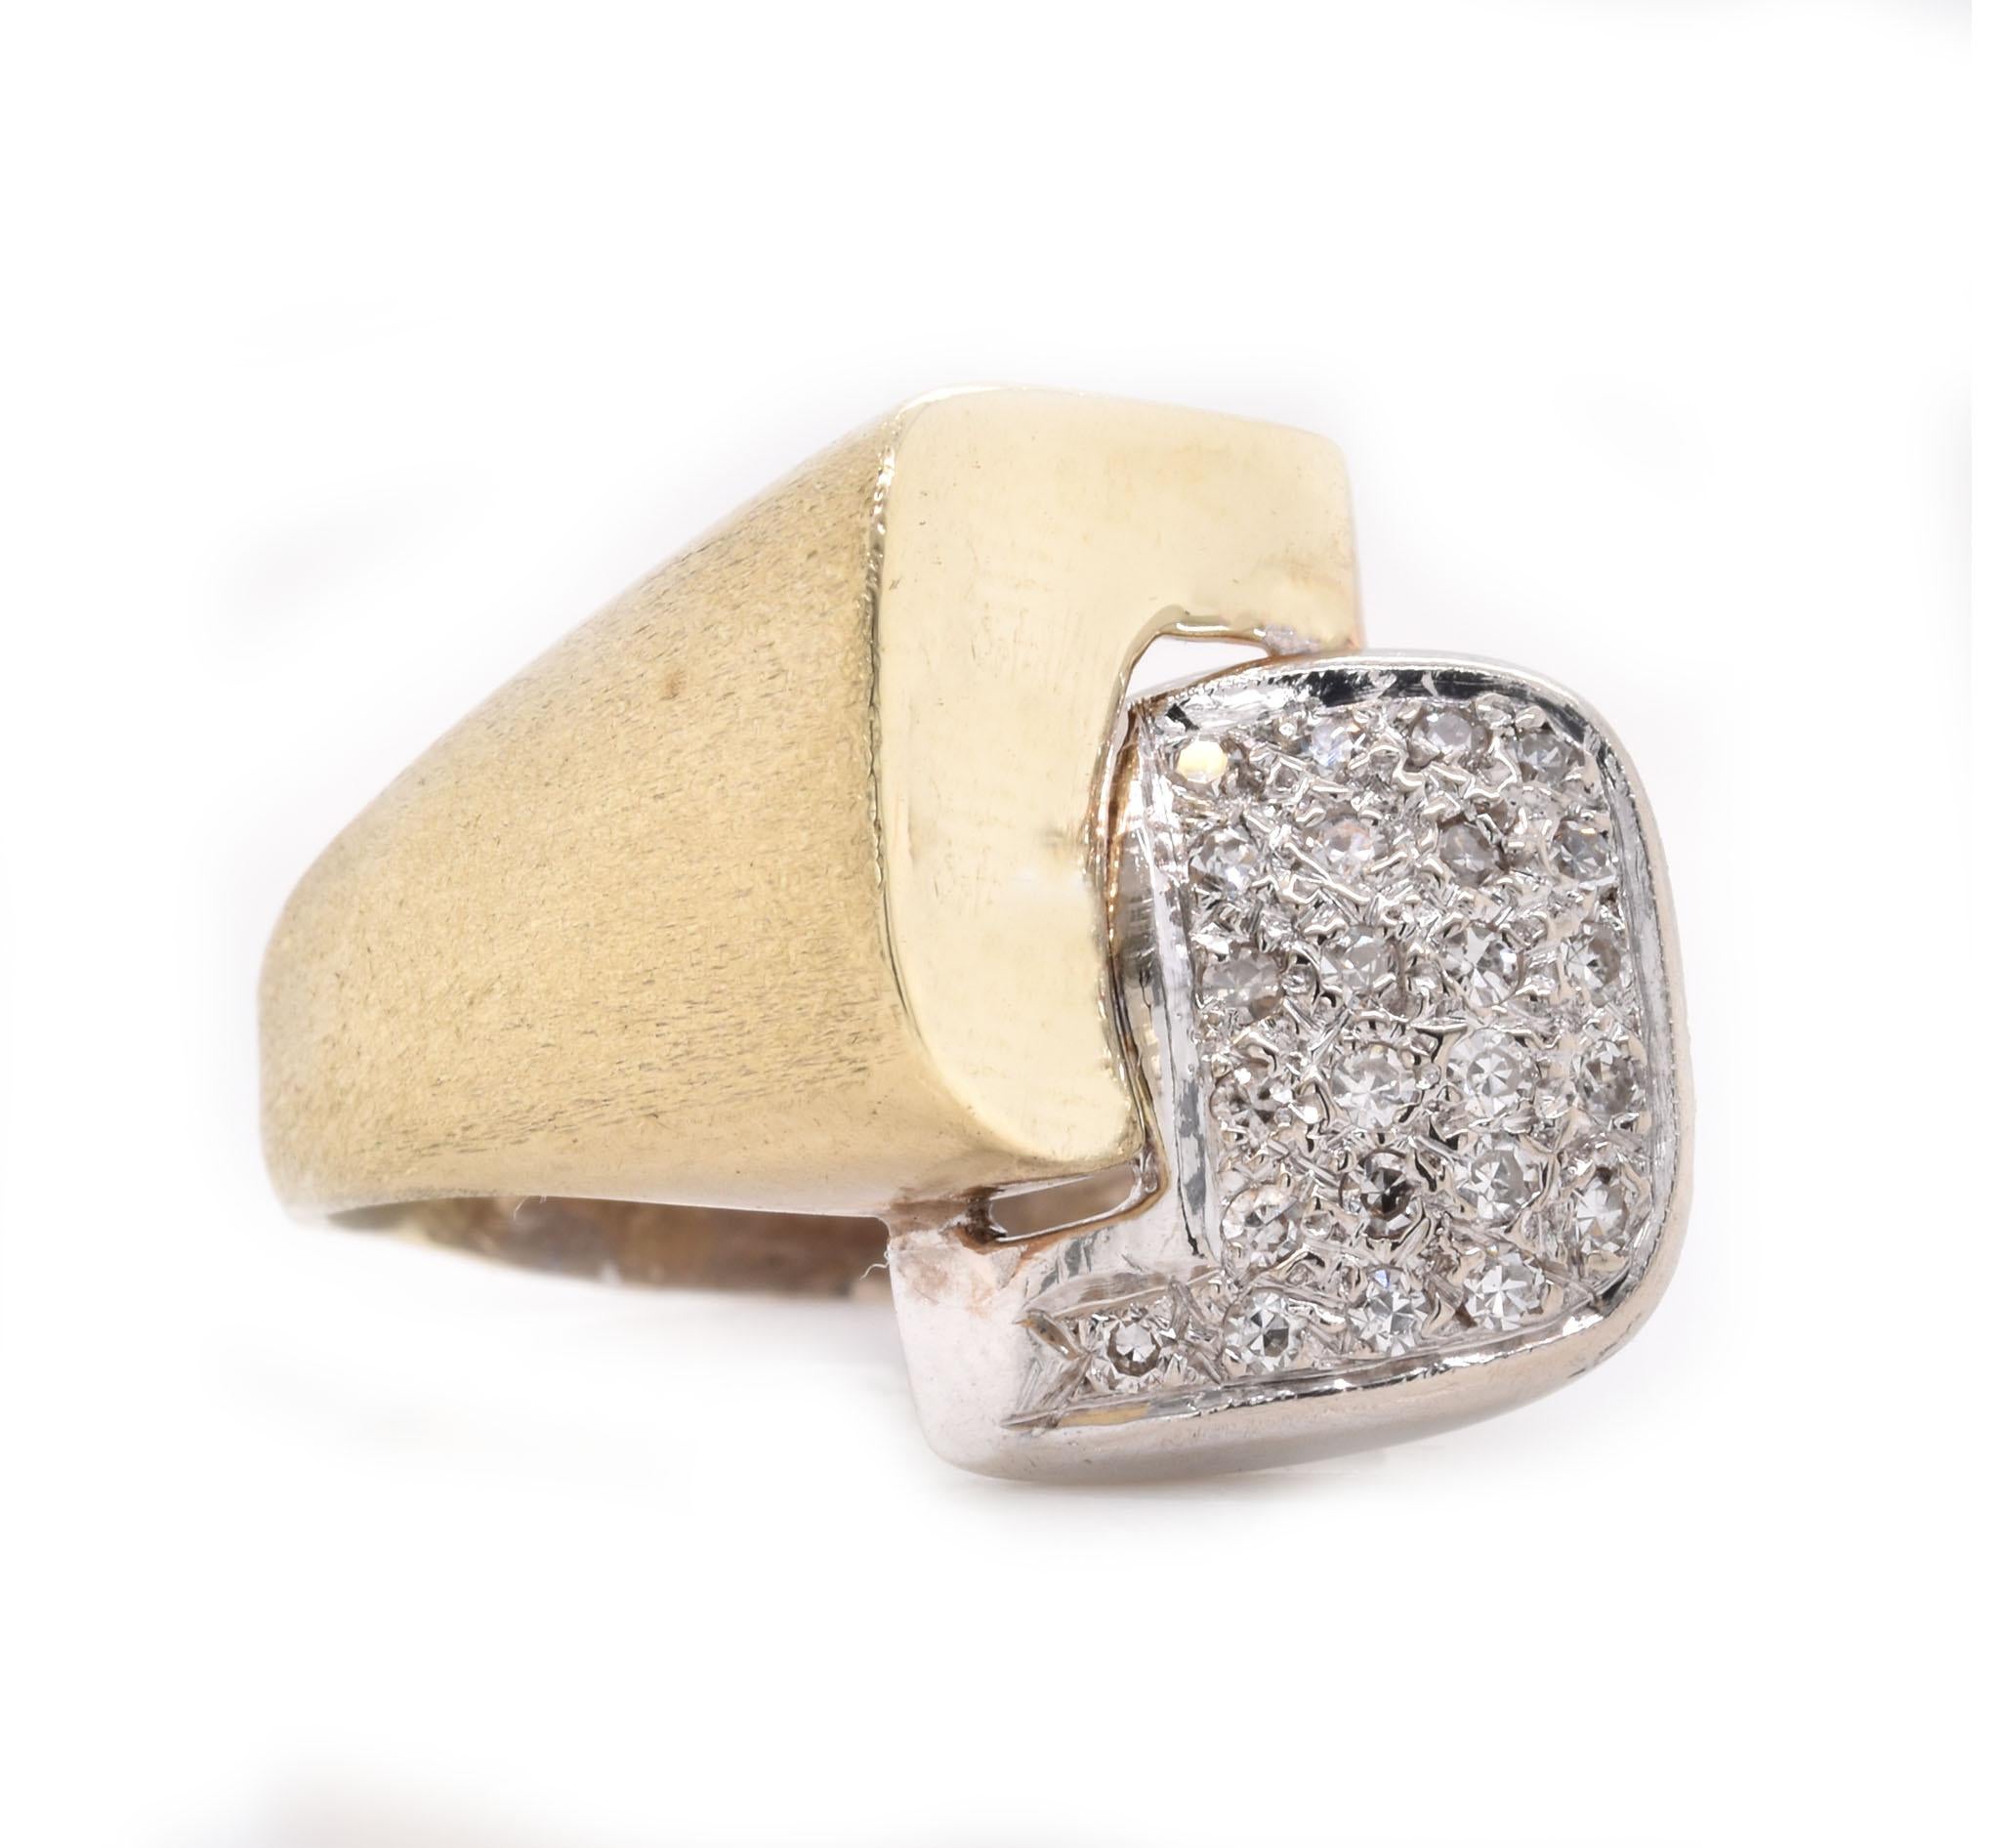 Designer: individuell
Material: 14K Weiß- und Gelbgold 
Diamant: 25 runde Diamanten mit Brillantschliff = .23cttw
Farbe: H
Klarheit: SI1
Ringgröße: 8 (bitte erlauben Sie zwei zusätzliche Versandtage für Größenanfragen)
Gewicht:  7.44 Gramm
